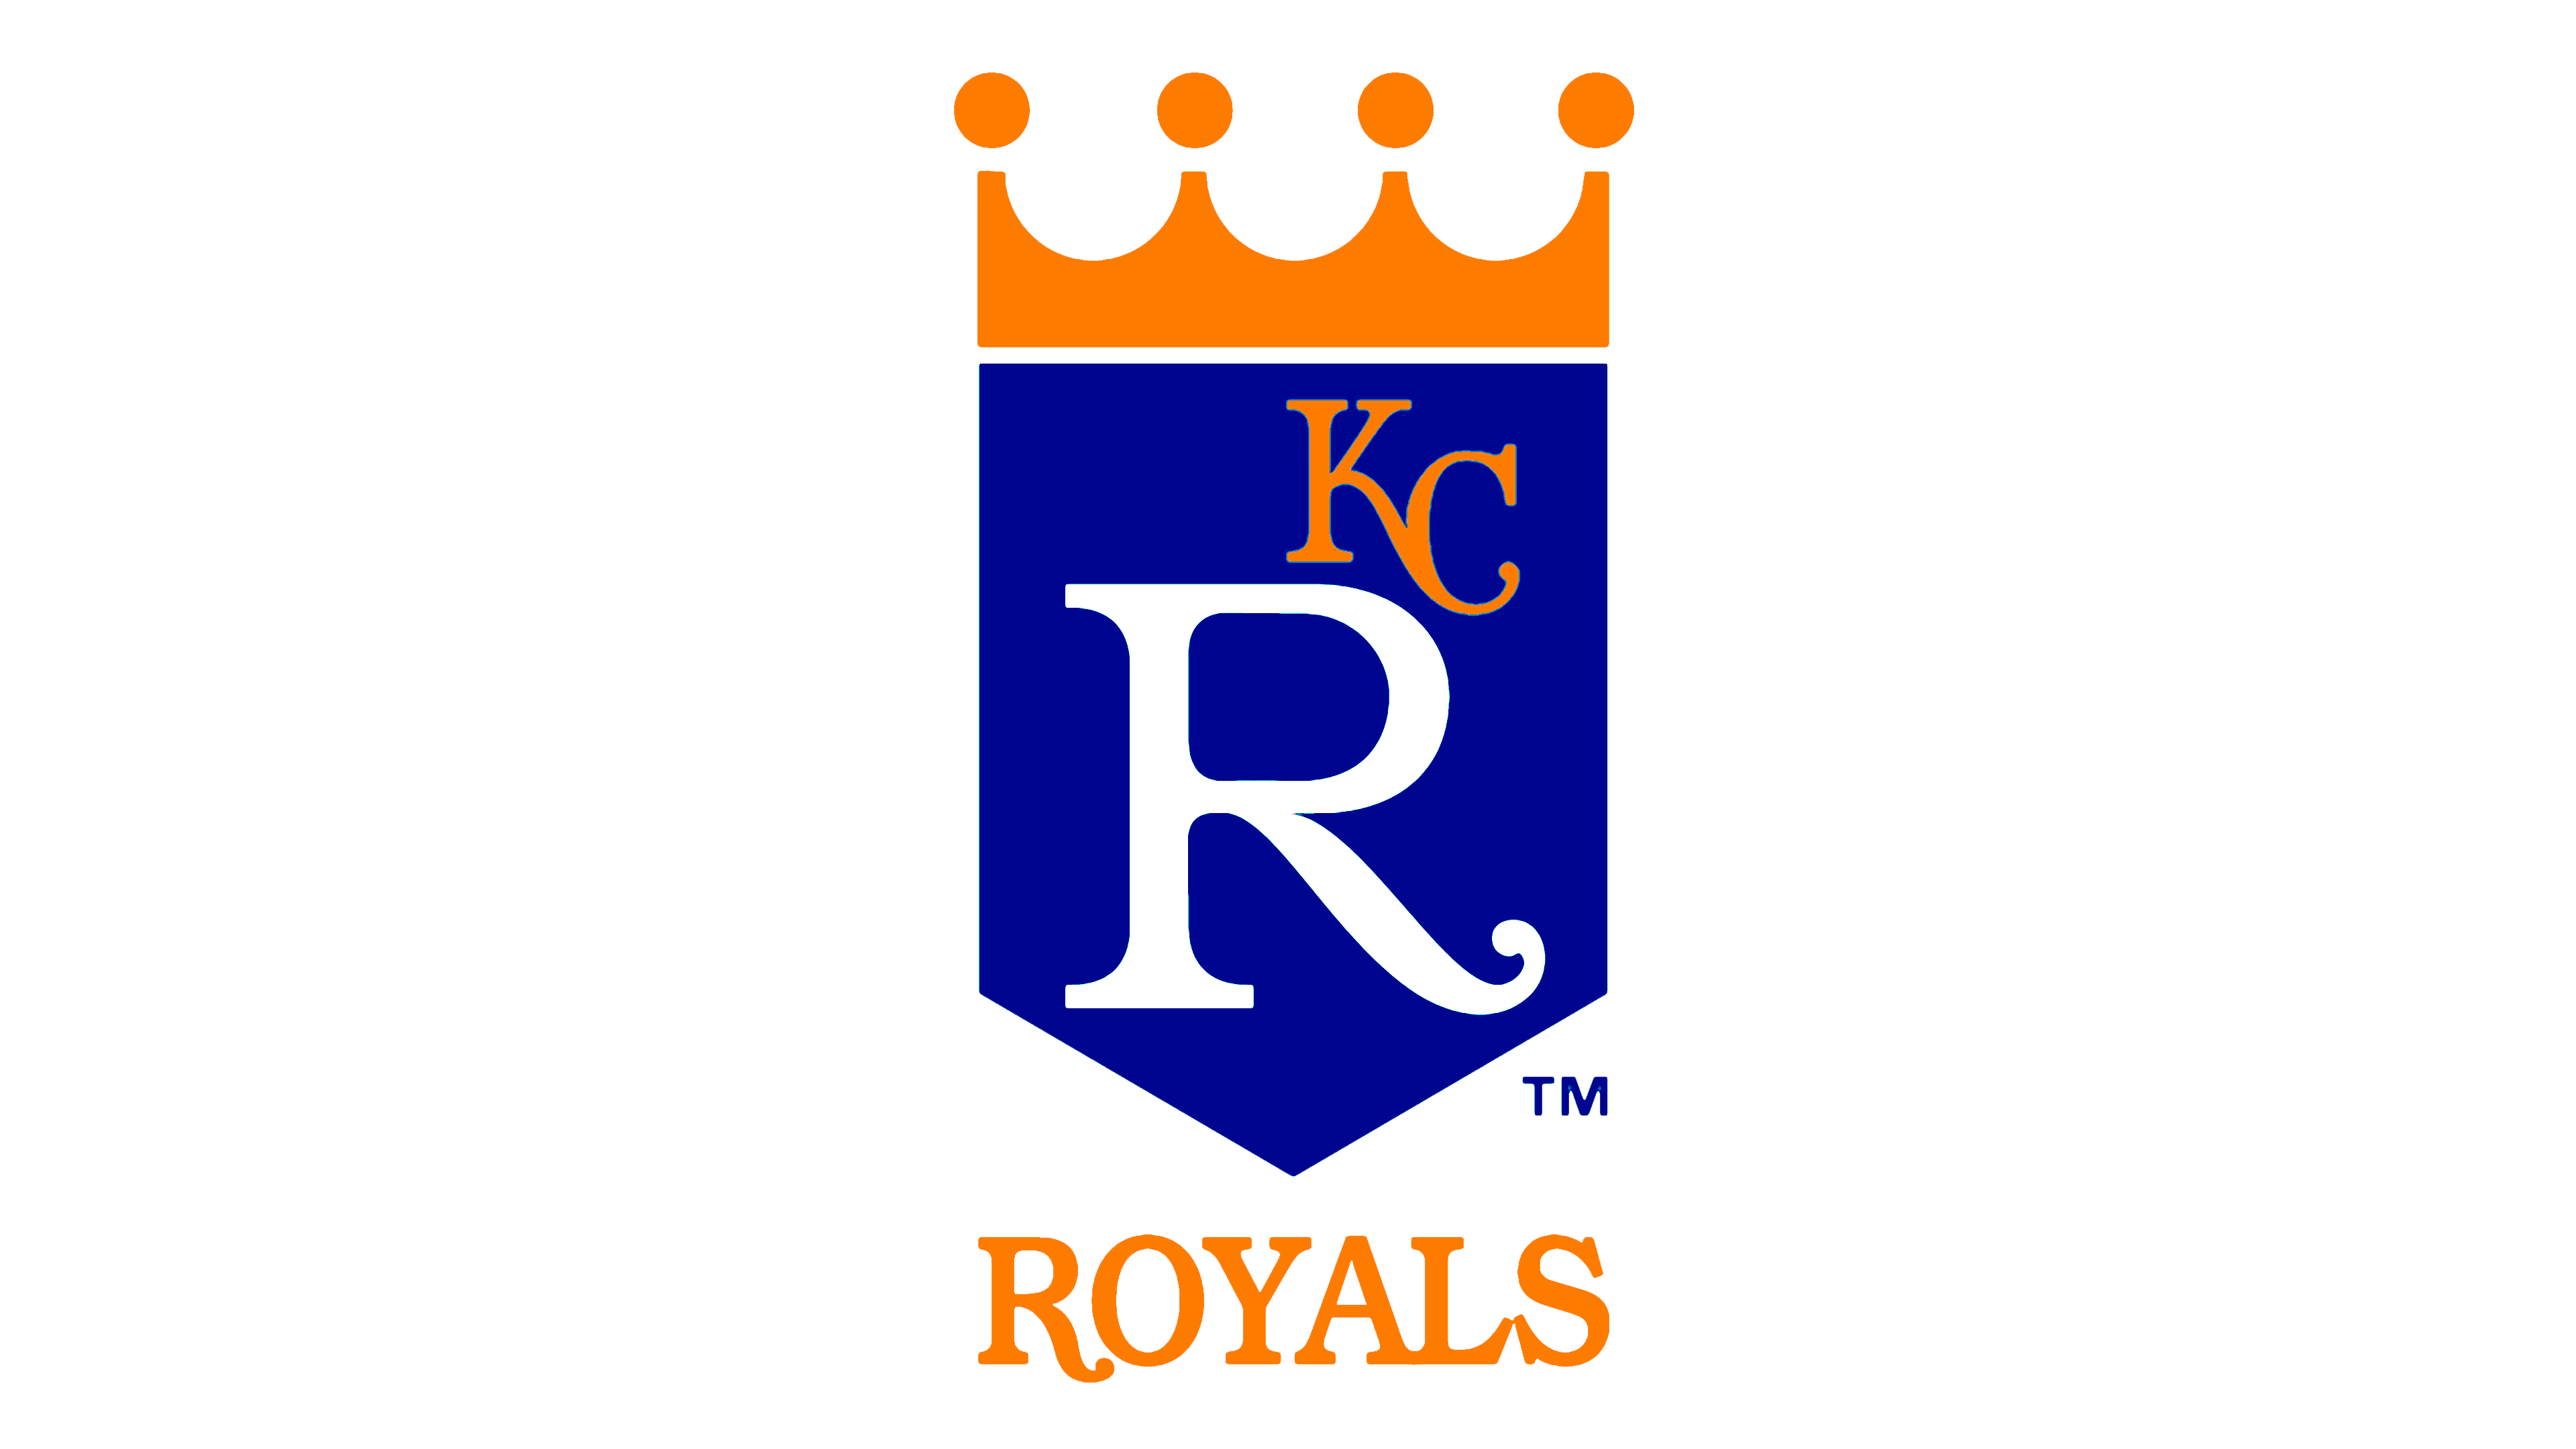 Kansas City Royals team name origin